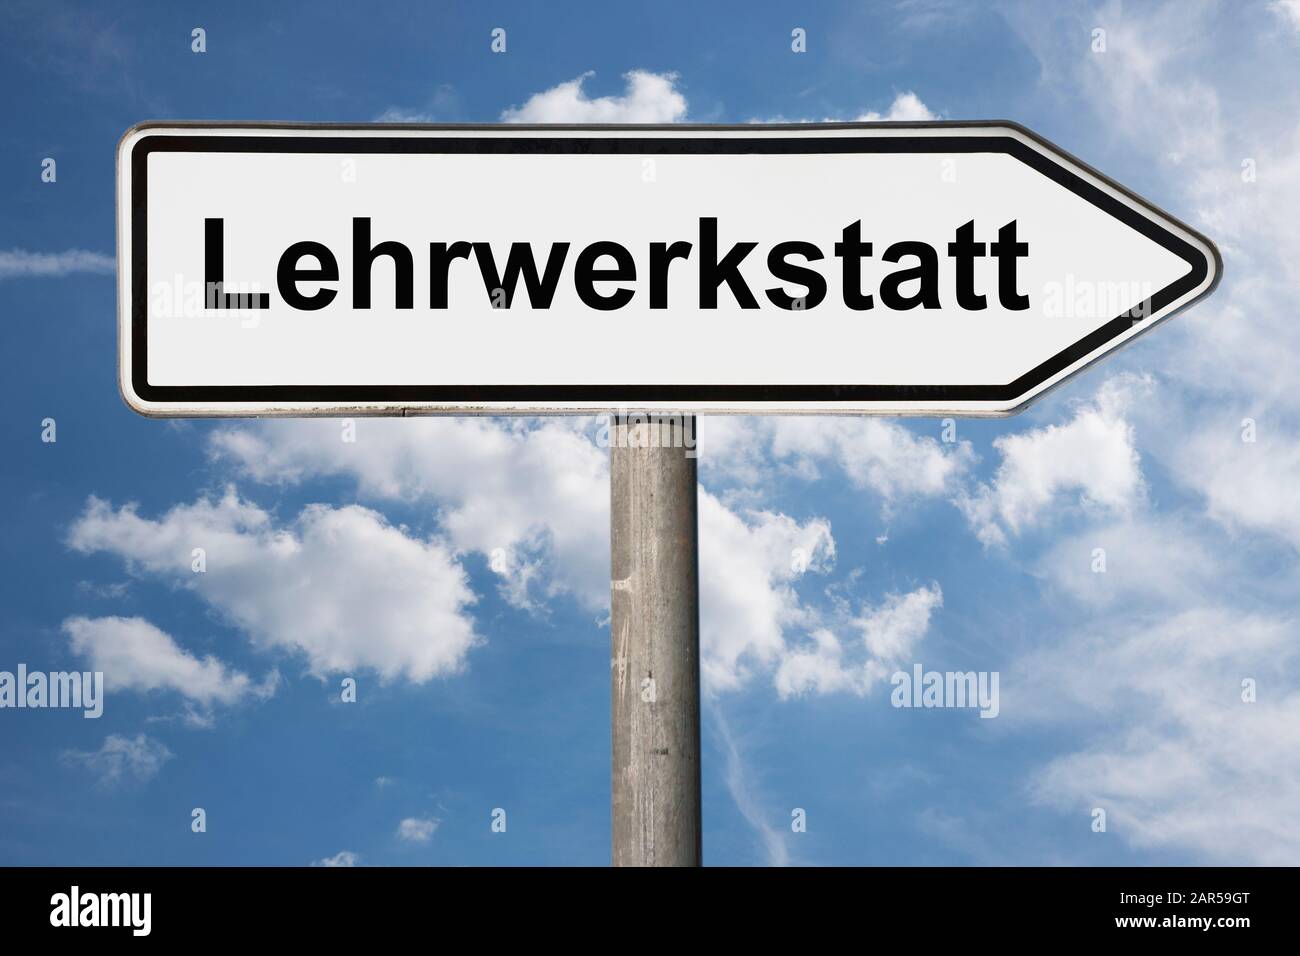 Photo détaillée d'une pancarte portant l'inscription Lehrwerkstatt (atelier de formation) Banque D'Images